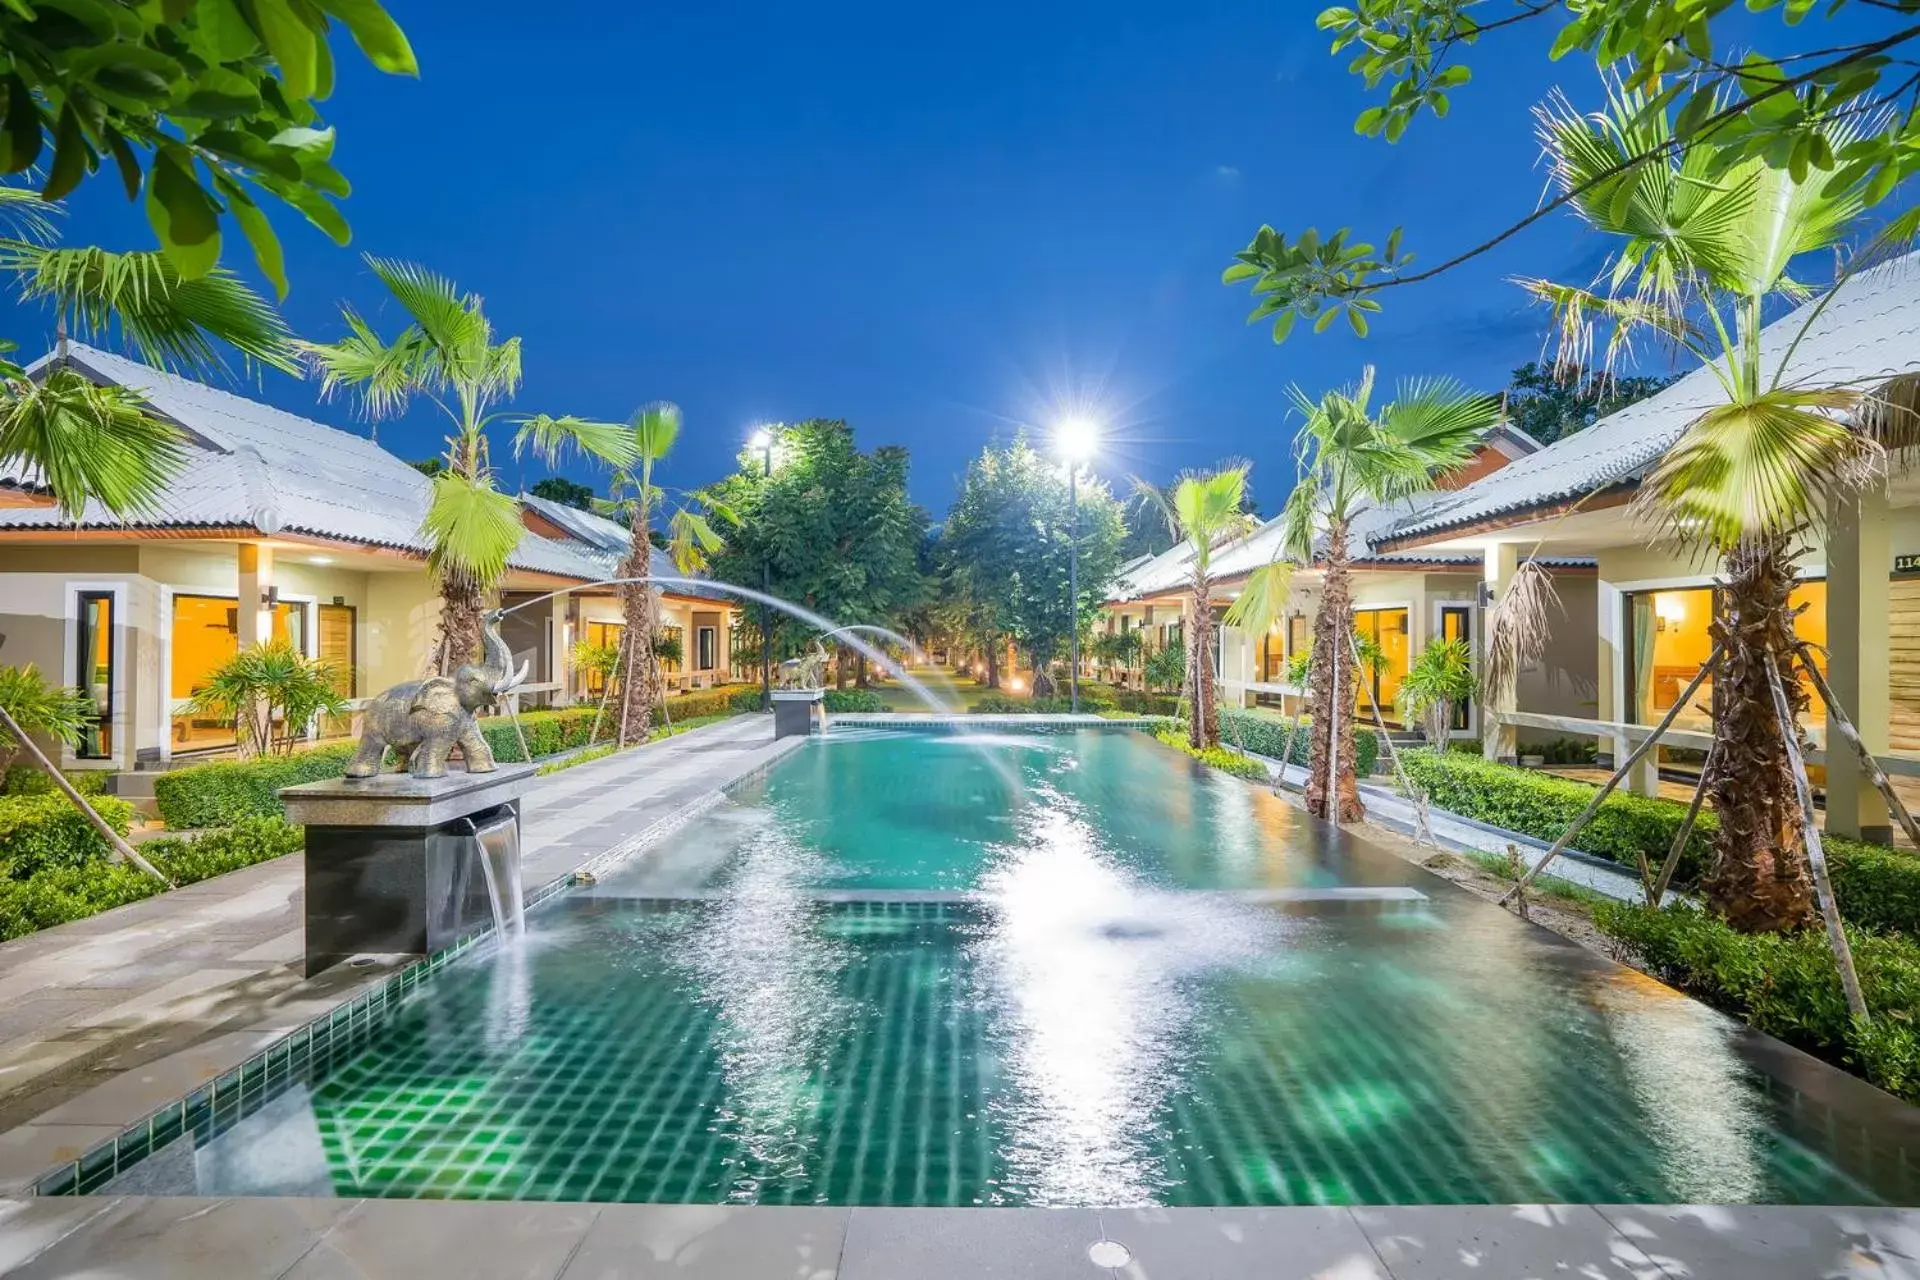 Property building, Swimming Pool in Tontan Resort Cha-am